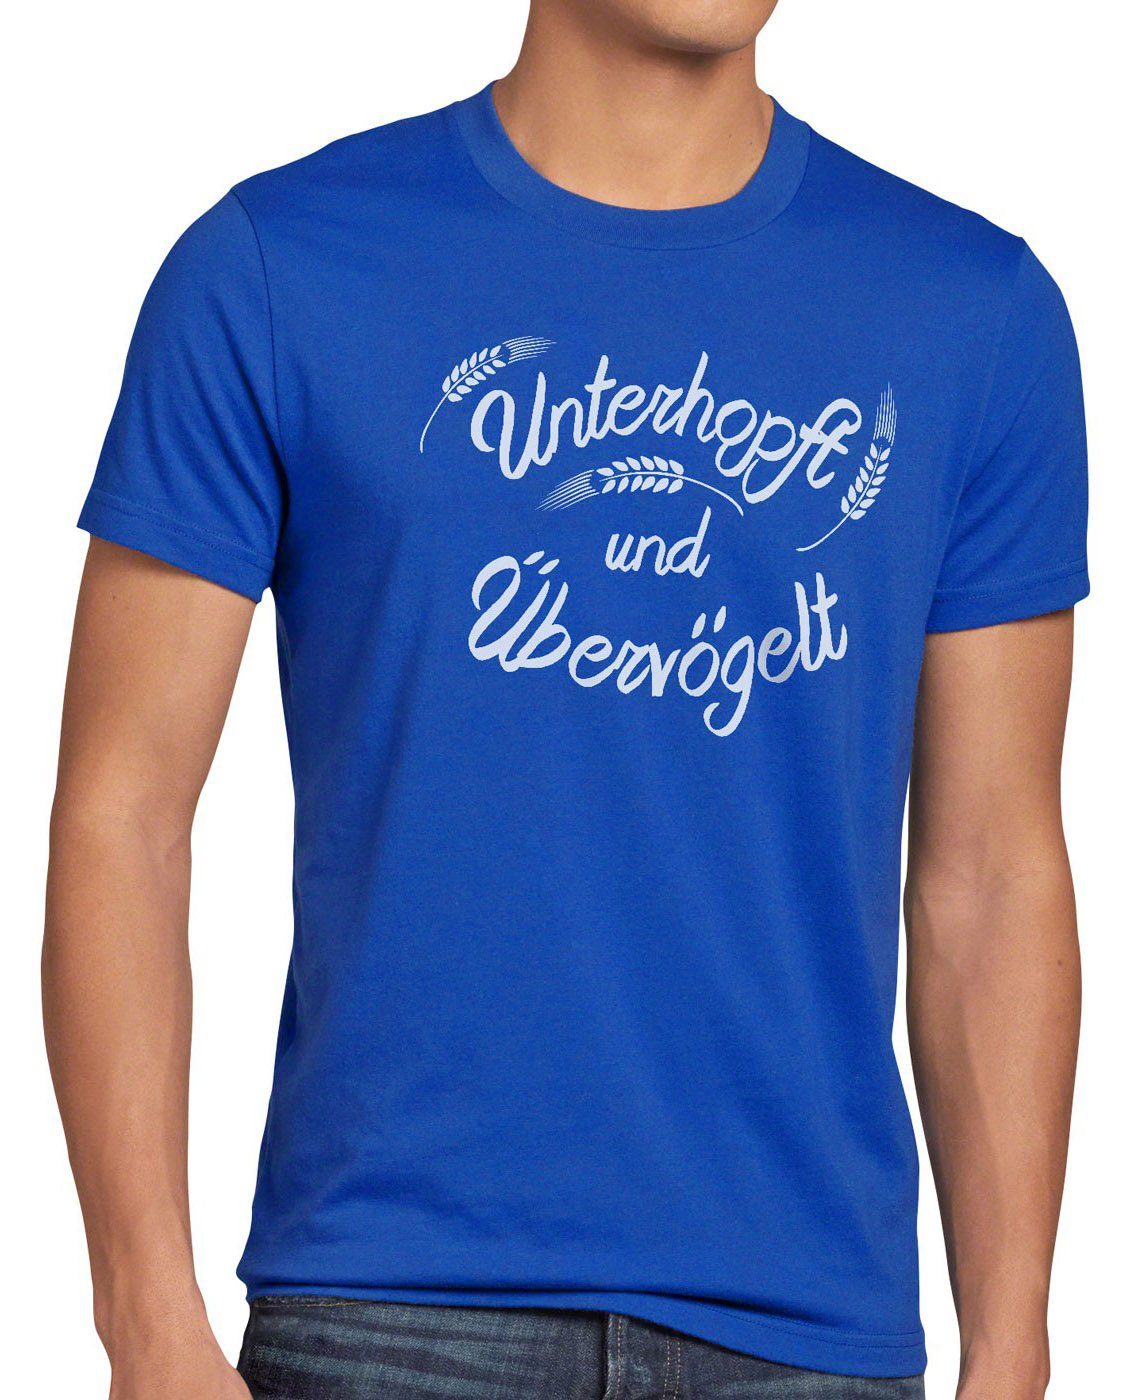 blau Malz Übervögelt style3 Kult T-Shirt Unterhopft Bier Funshirt Fun Shirt Herren Print-Shirt Spruch